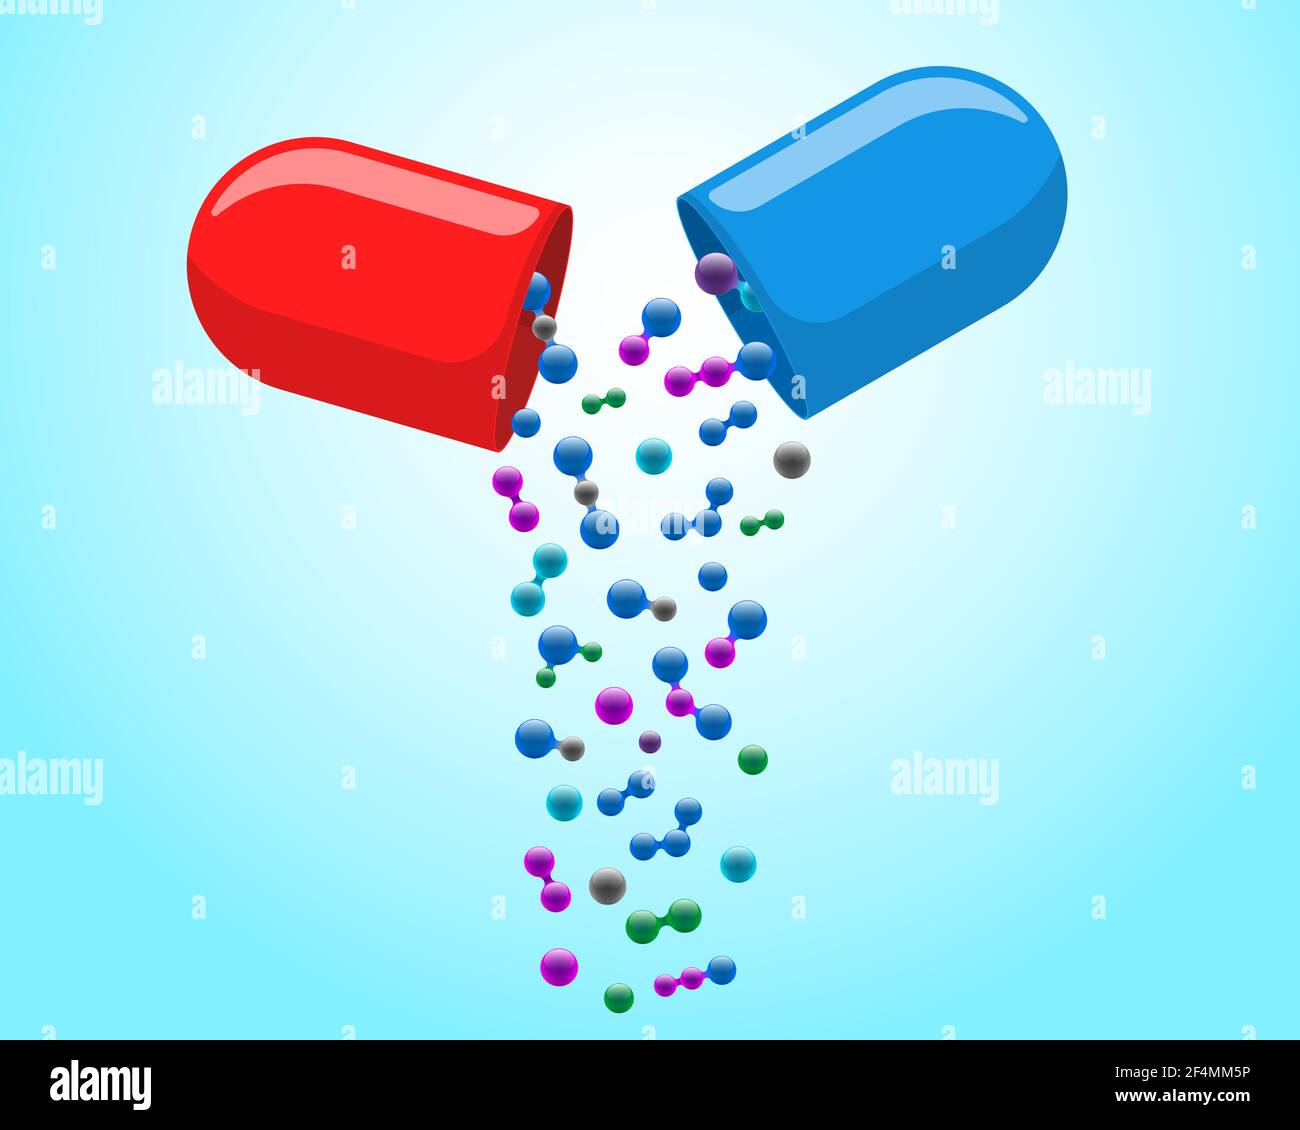 Capsule médicale pilule ouverte avec tomber des molécules colorées.Médecine la vitamine de médicament améliorer le concept de santé.Illustration des moitiés d'antibiotiques pharmaceutiques rouges et bleues avec particules vector eps Illustration de Vecteur